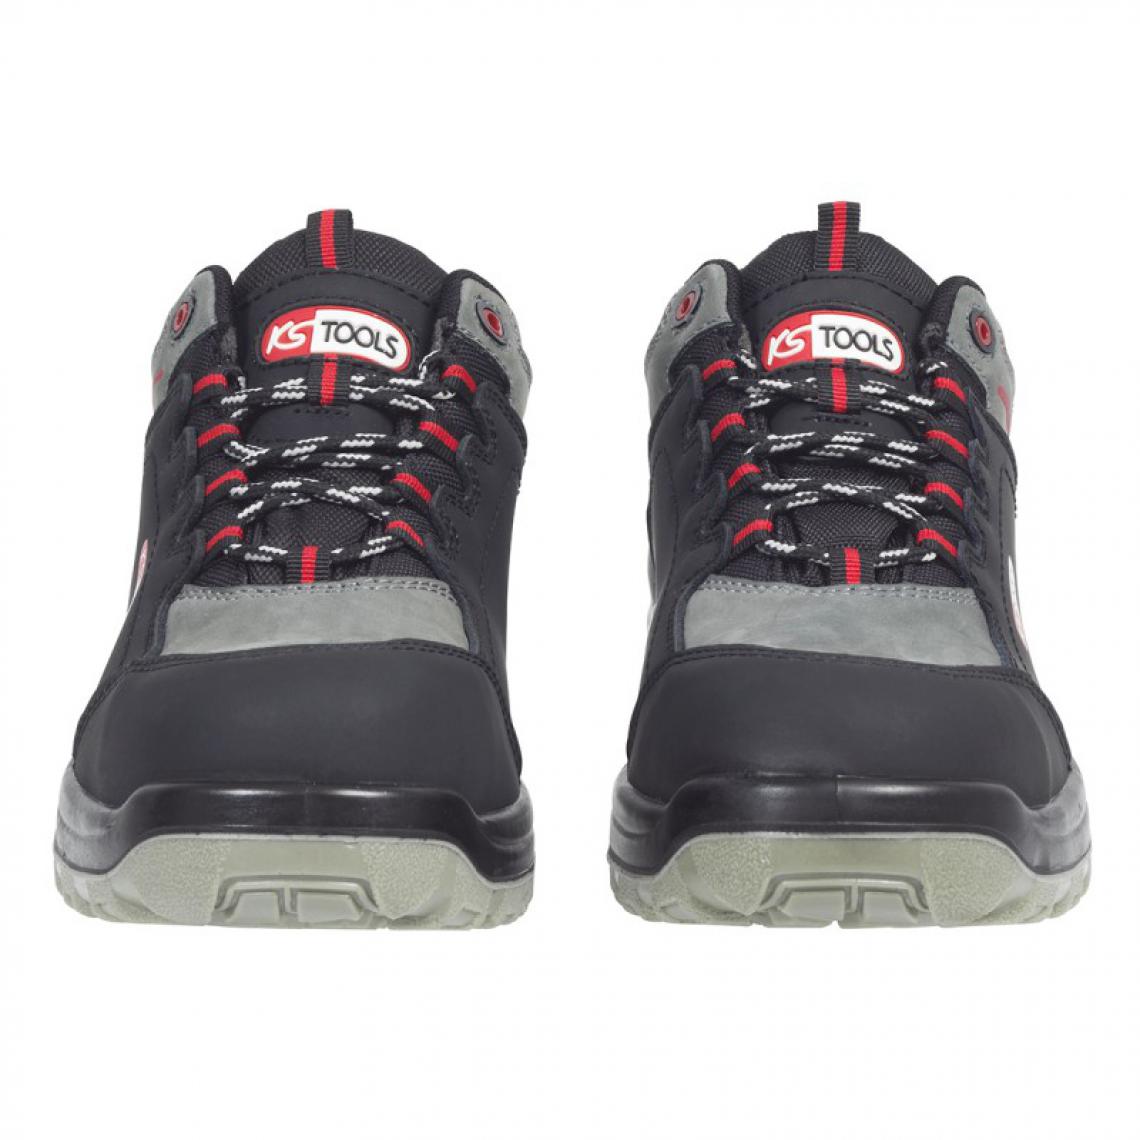 Kstools - Chaussures de sécurité KSTOOLS Couleur grise et noire taille 44 - Equipement de Protection Individuelle